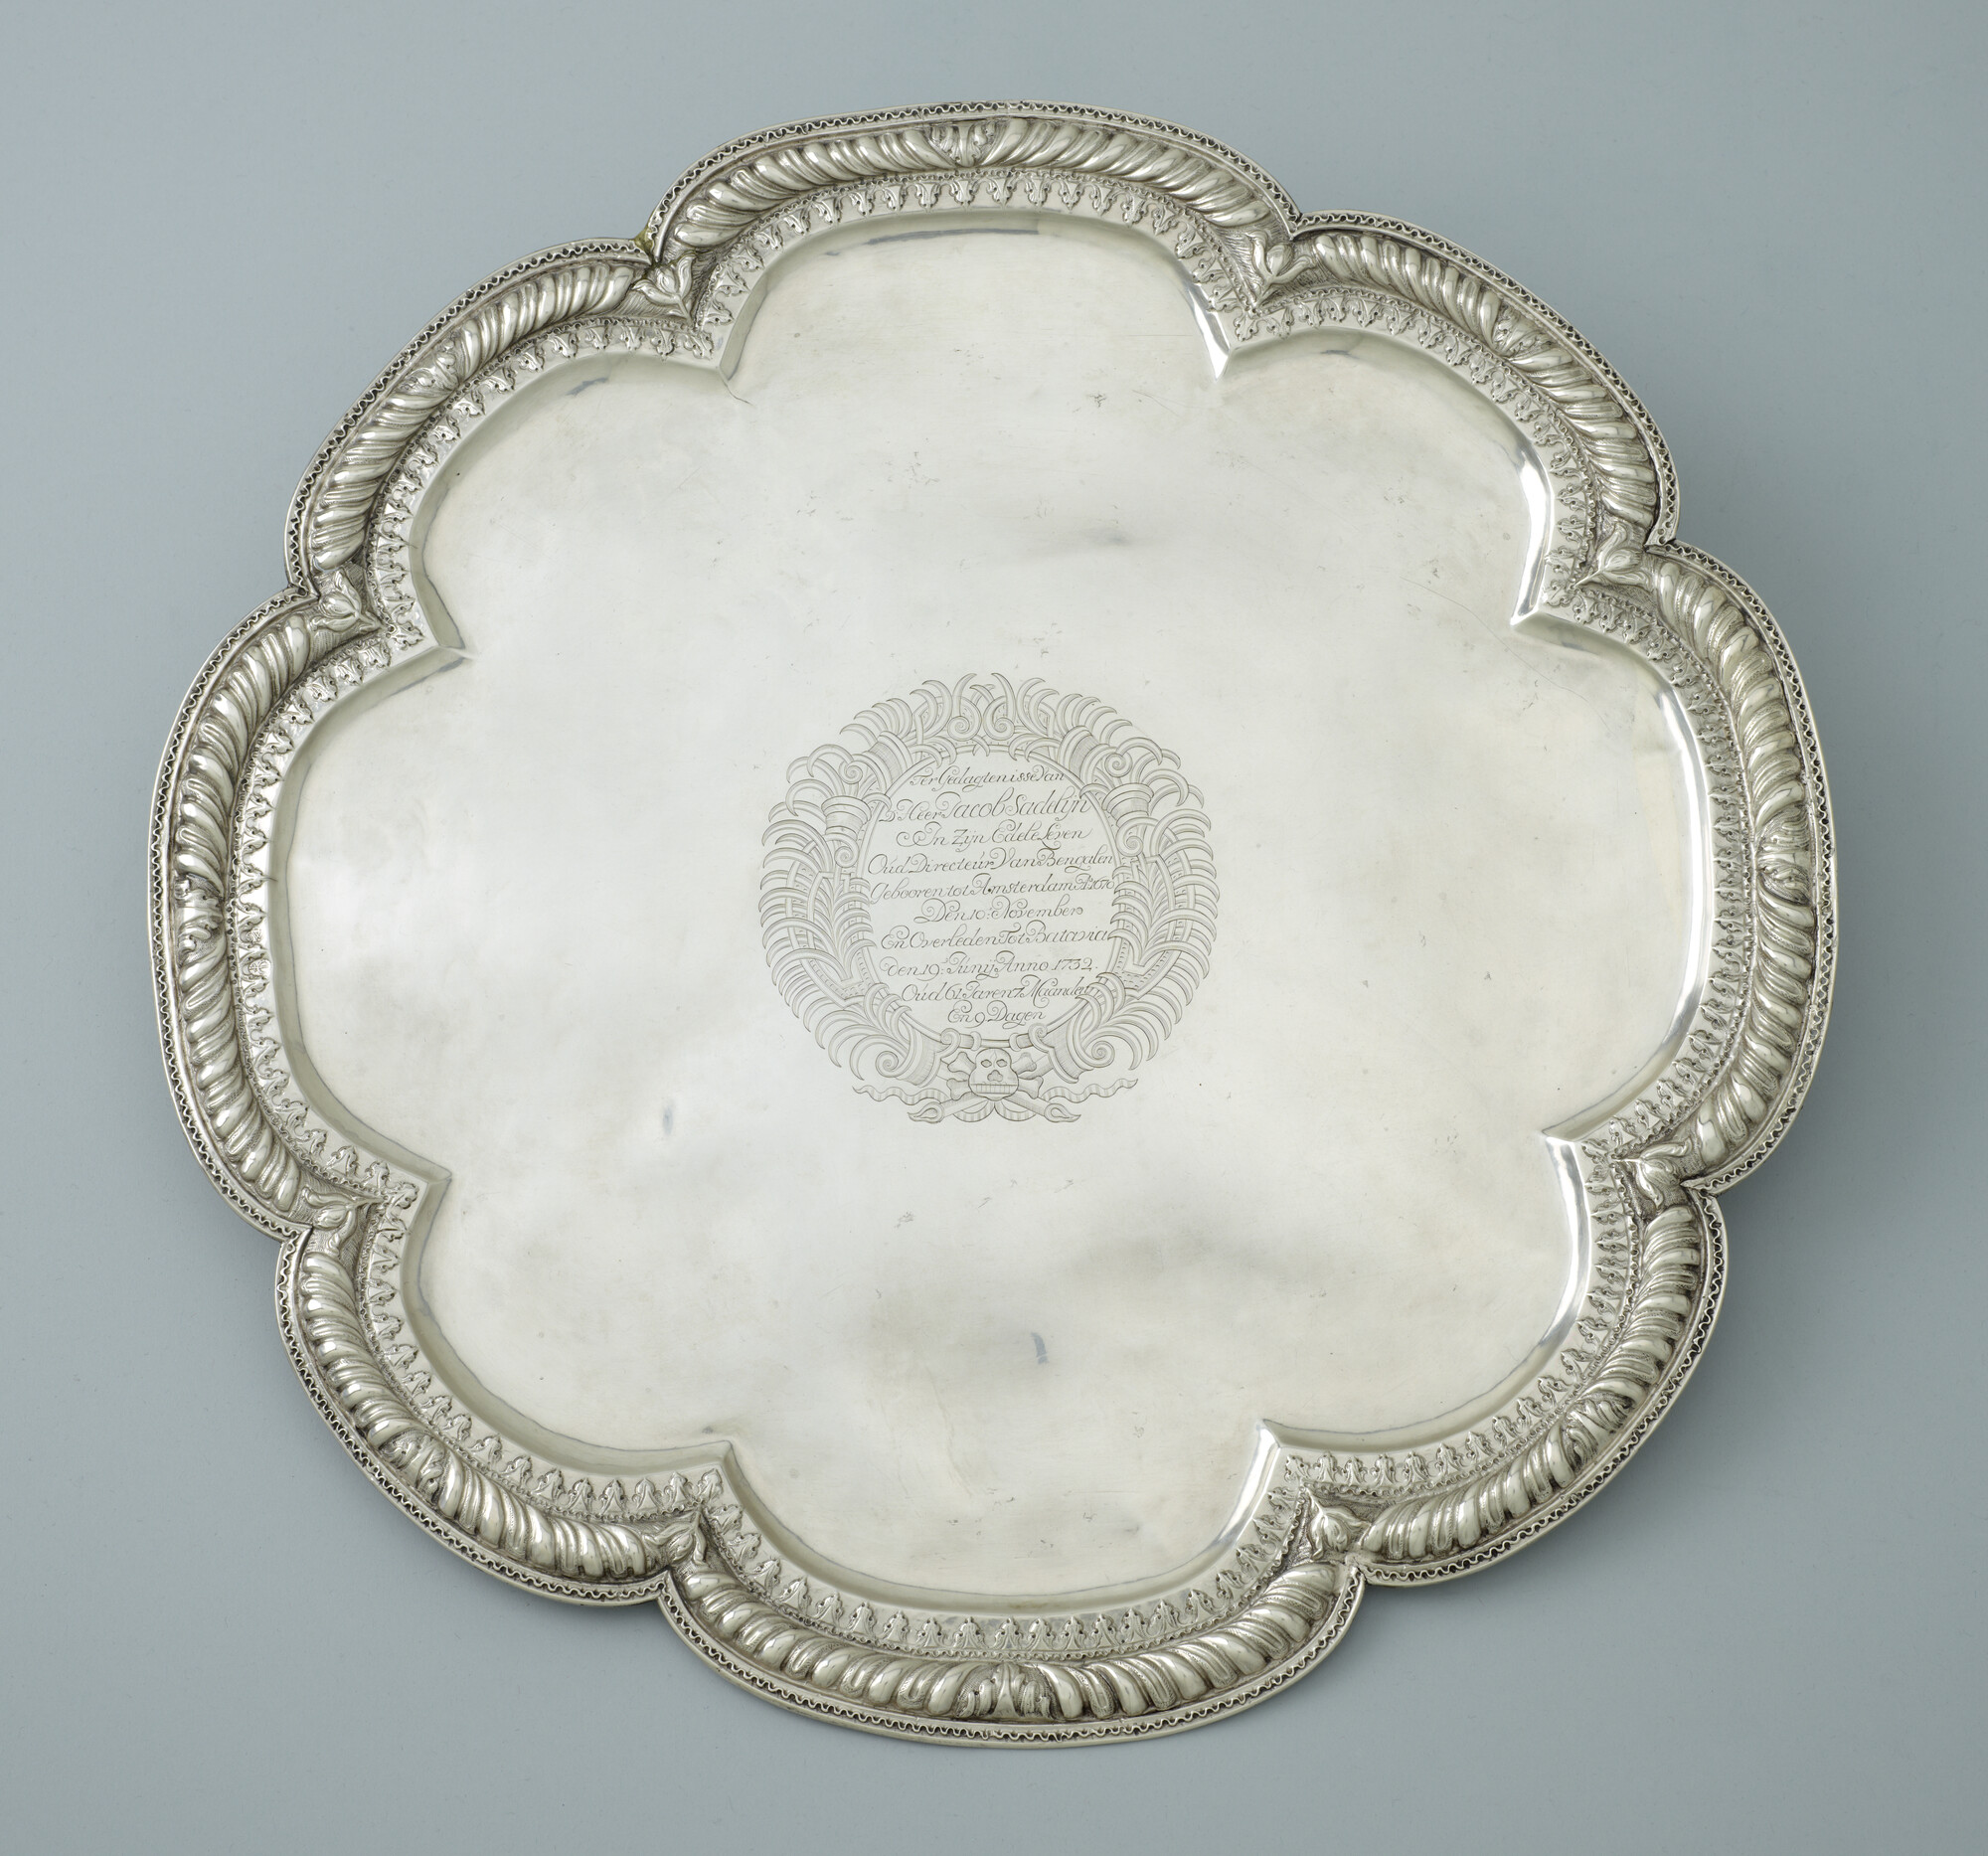 A.3495(01); Zilveren gedachtenisbord ter herinnering aan het overlijden van Jacob Sandelijn, 1732; gedenkbord